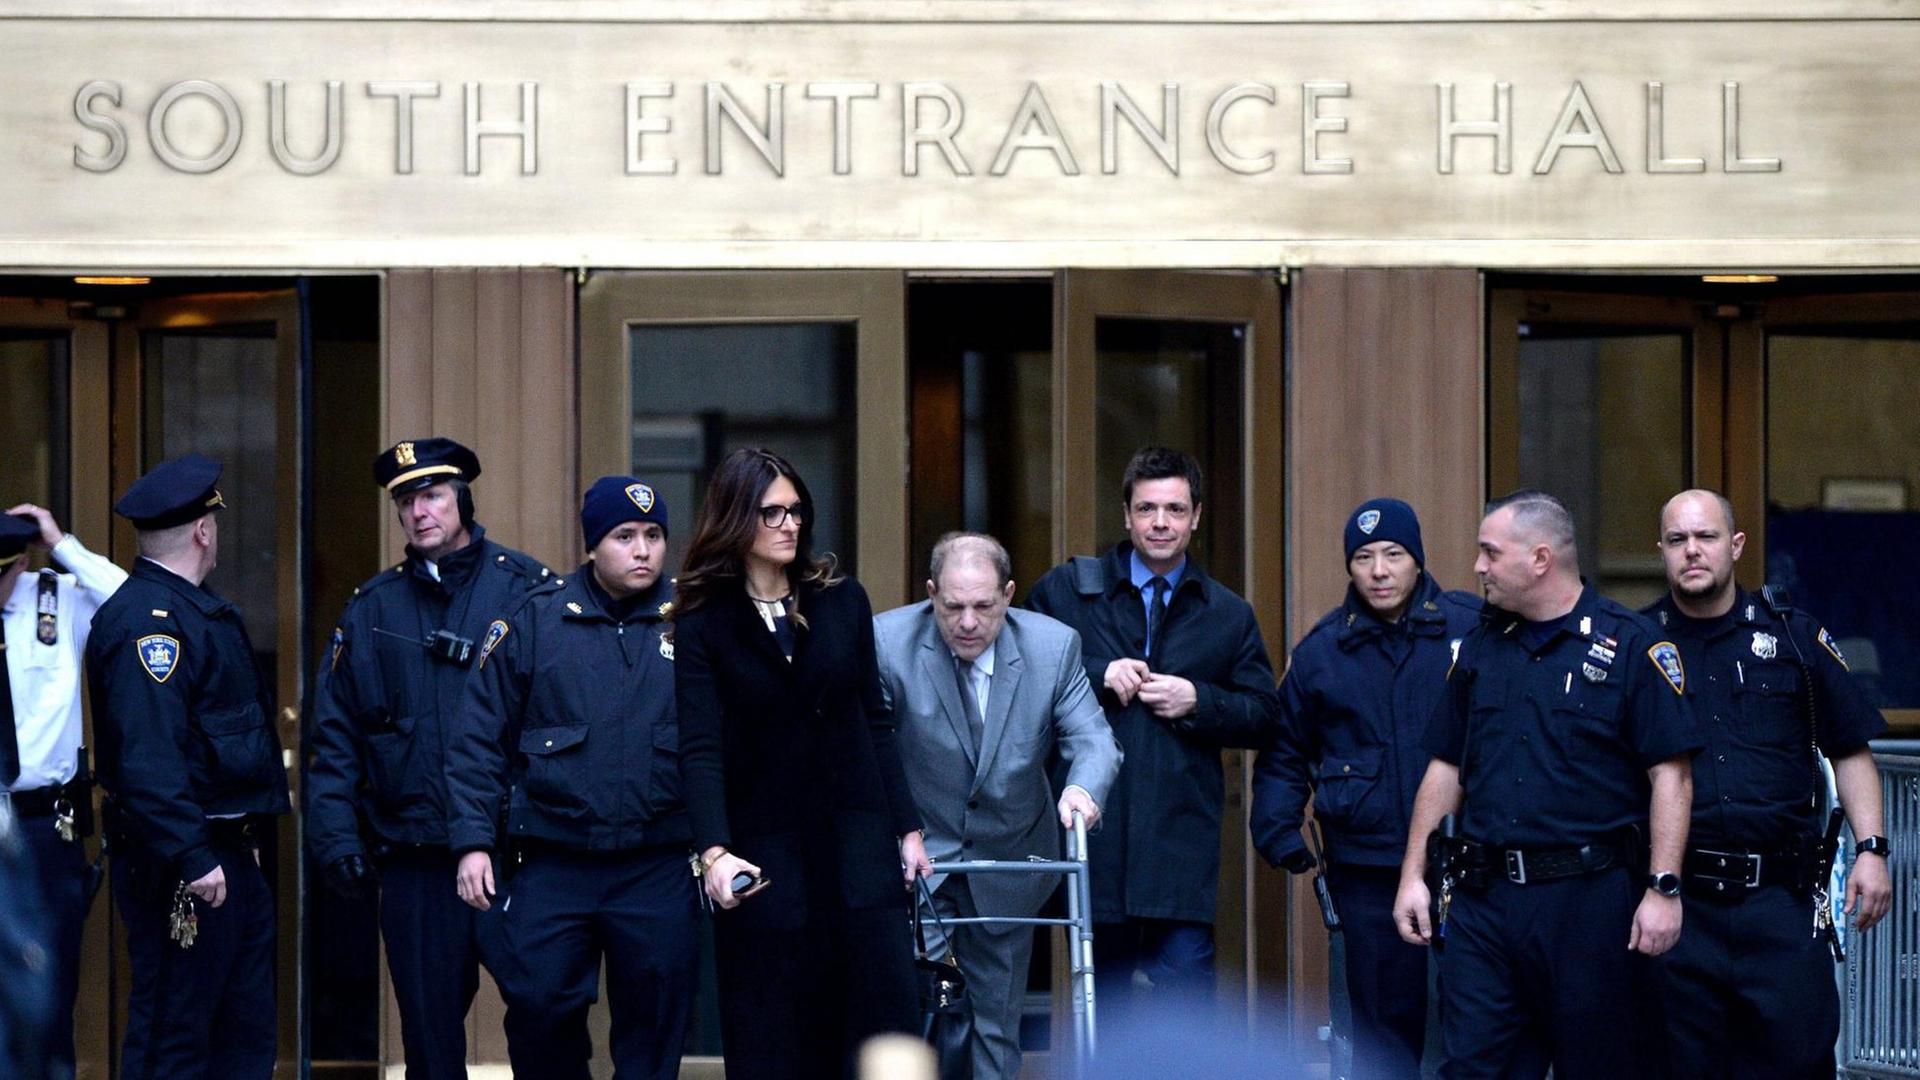 Der in den USA wegen Sexualverbrechen angeklagte ehemalige Filmproduzent Harvey Weinstein mit Gehhilfe beim Verlassen des Gerichtsgebäudes in New York am 7. Januar 2020.